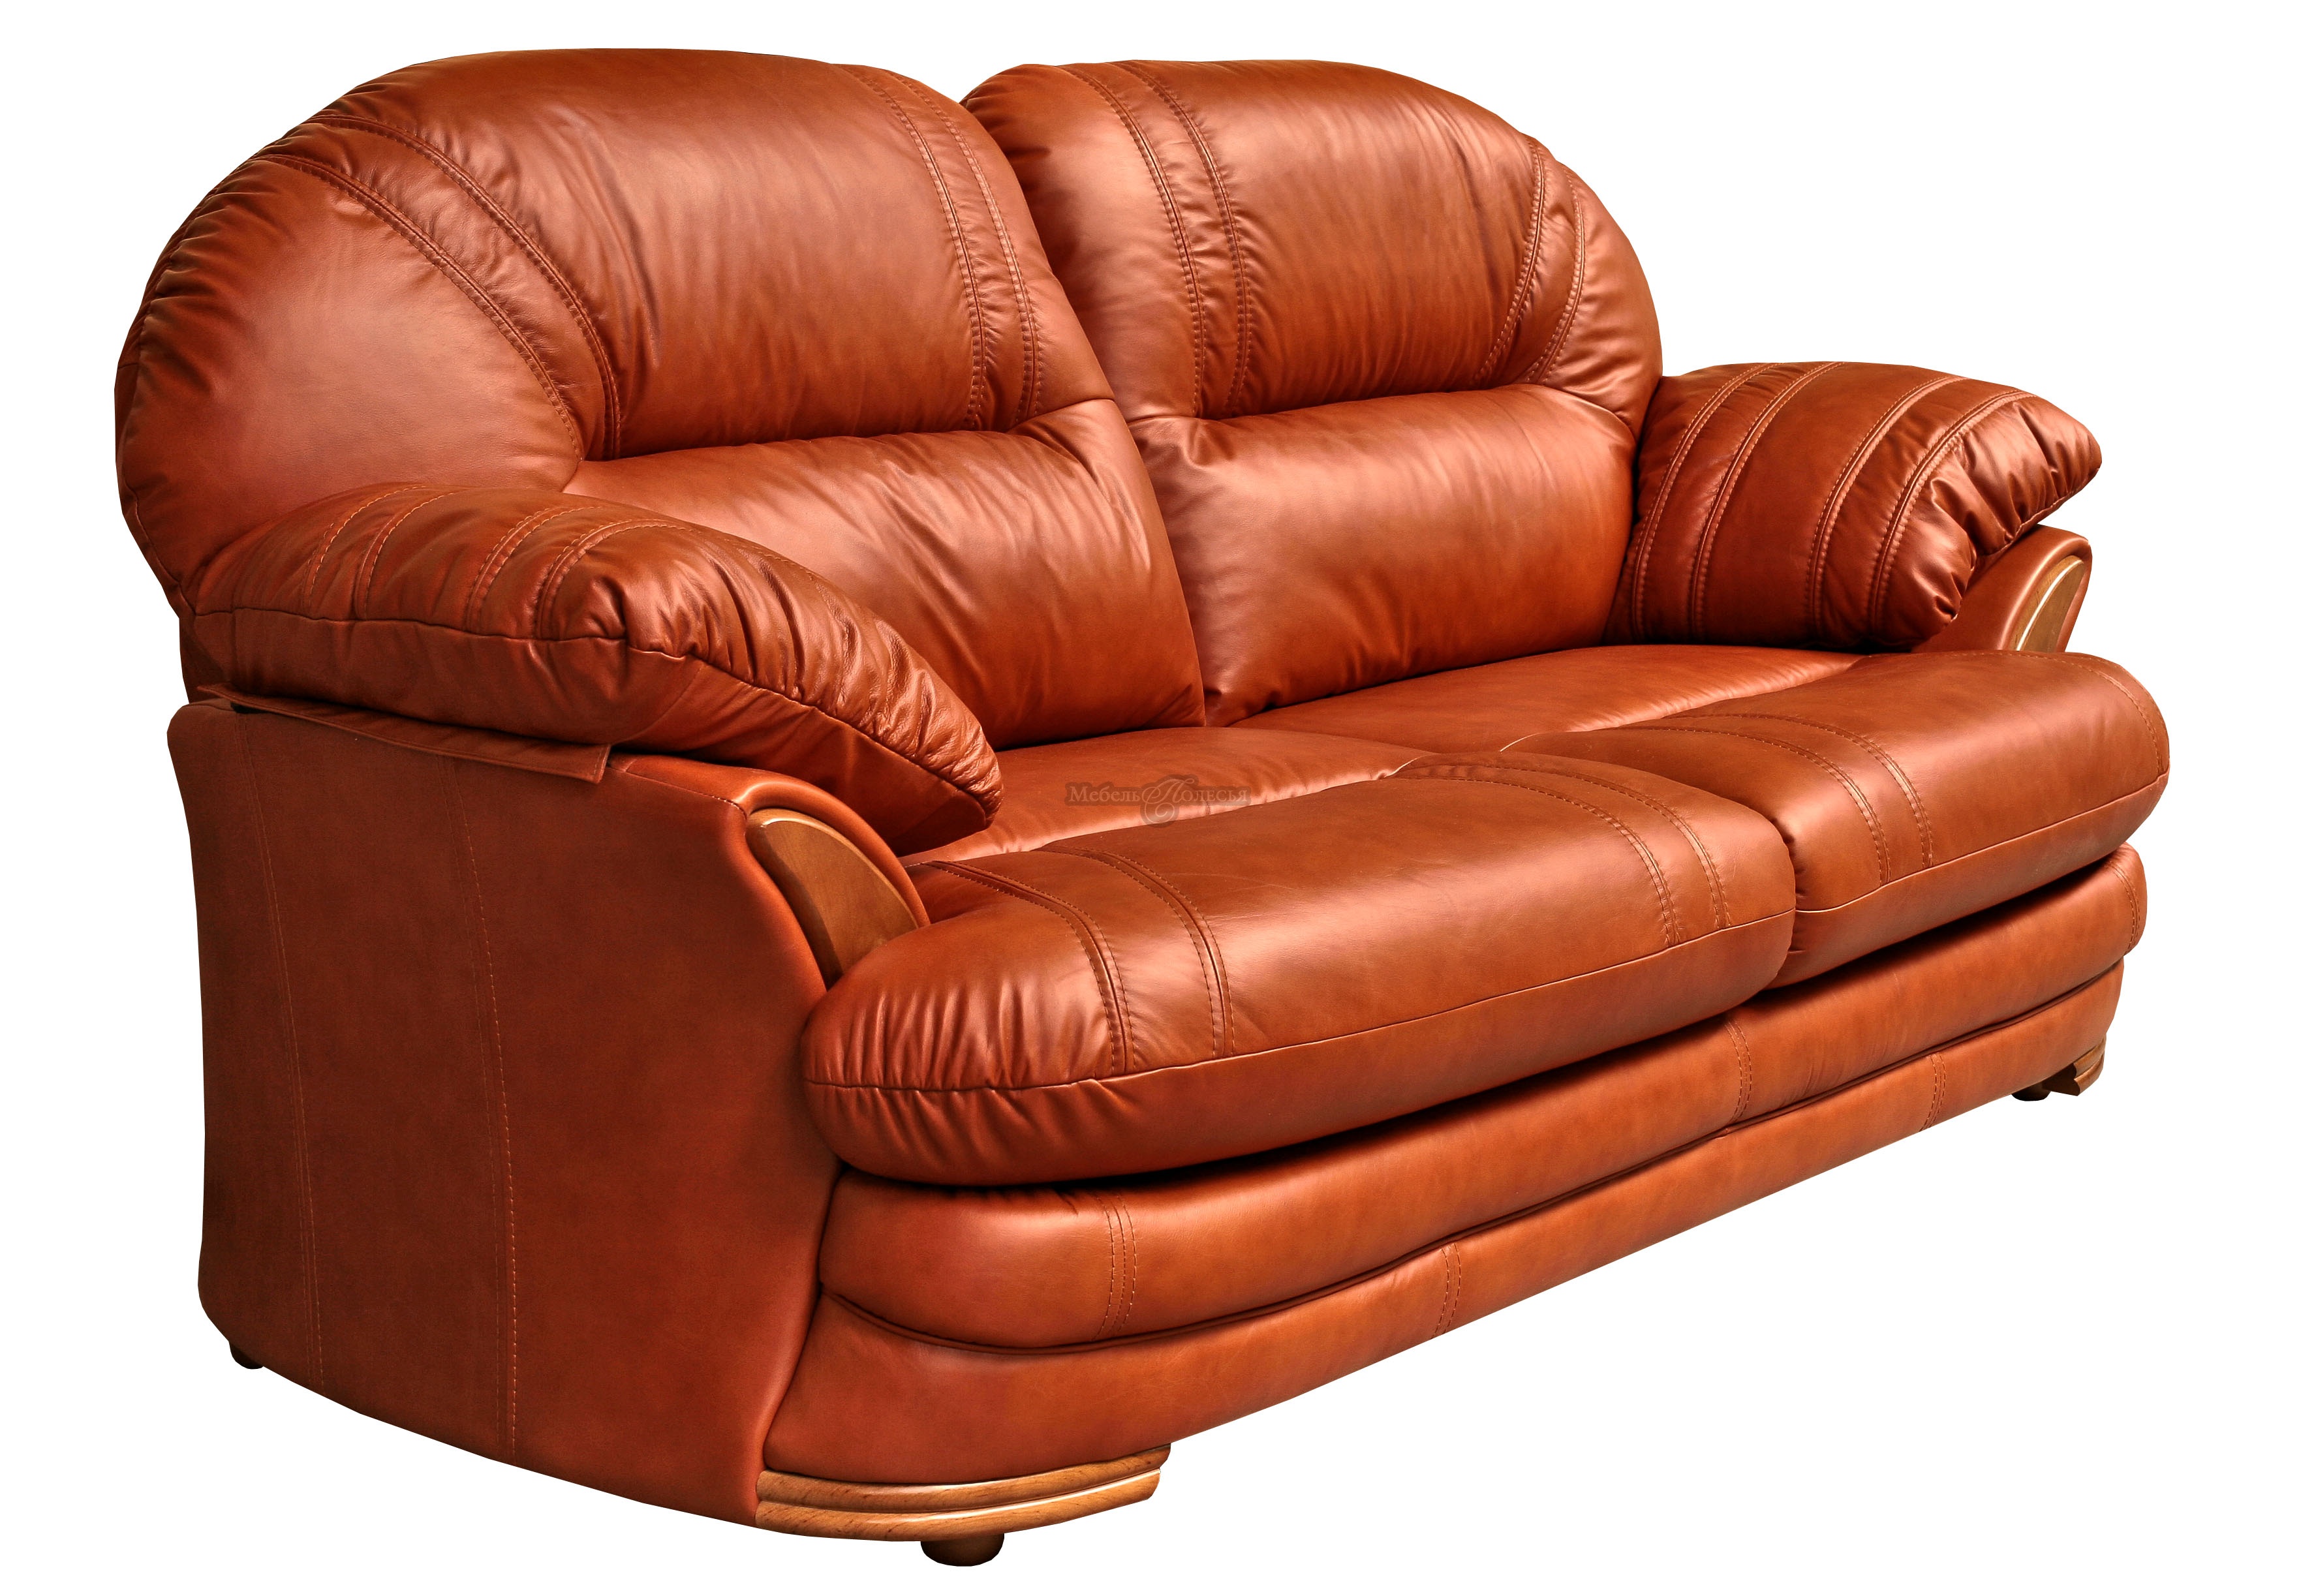 Трехместный диван-кровать Йорк в натуральной коже (3м) купить в Москве отпроизводителя Пинскдрев - Белорусская мебель от Мебель Полесья.